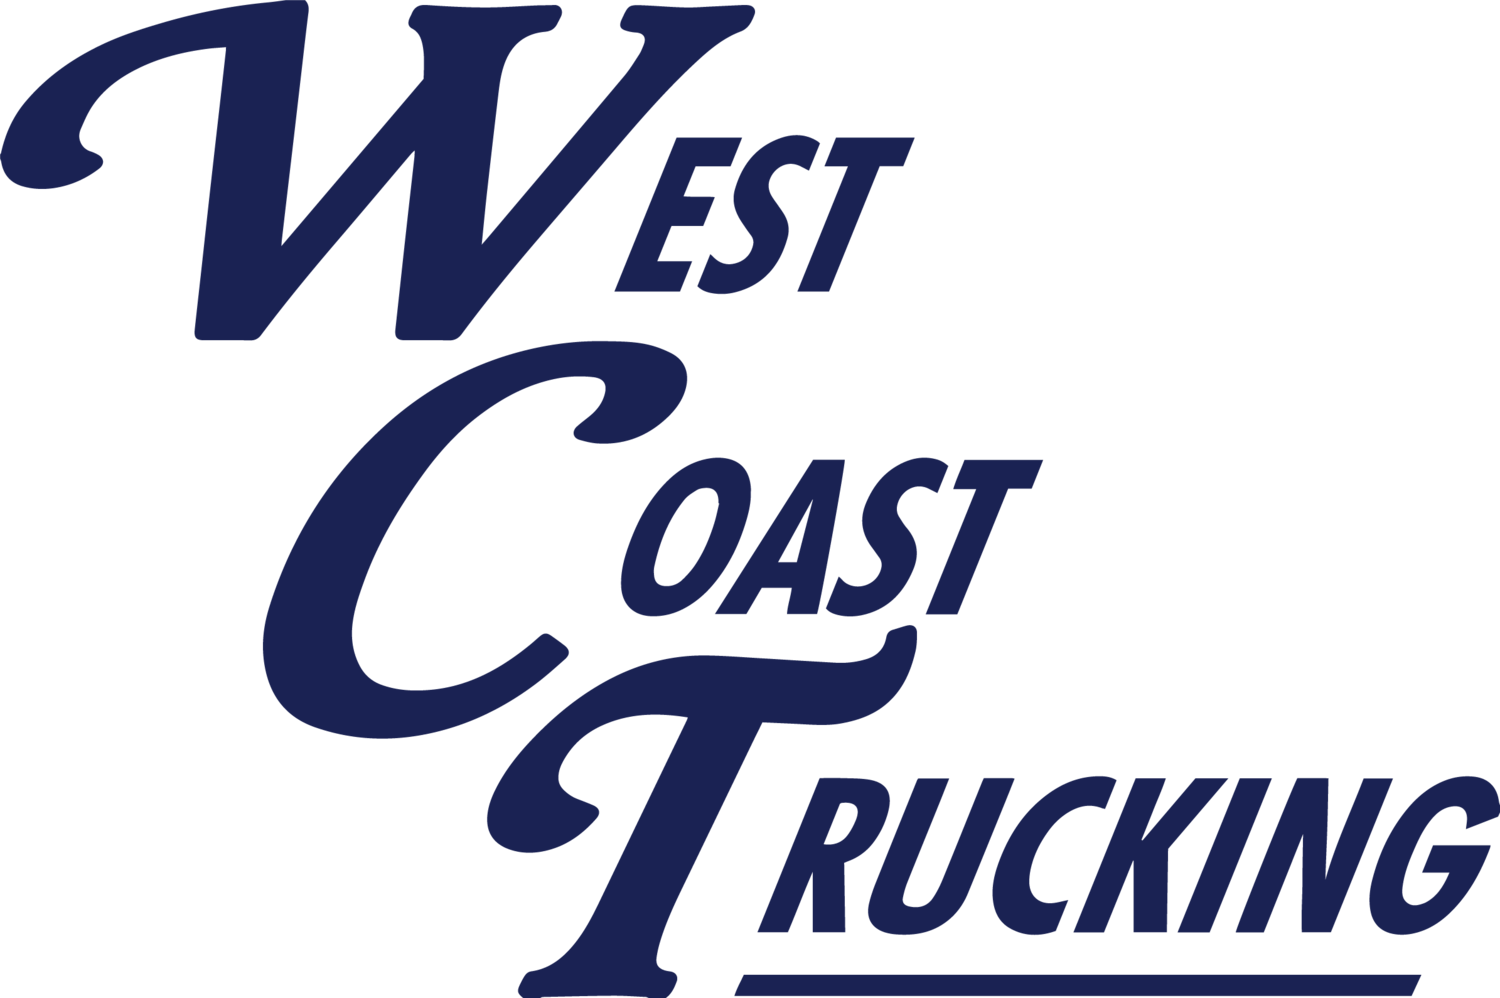 West Coast Trucking